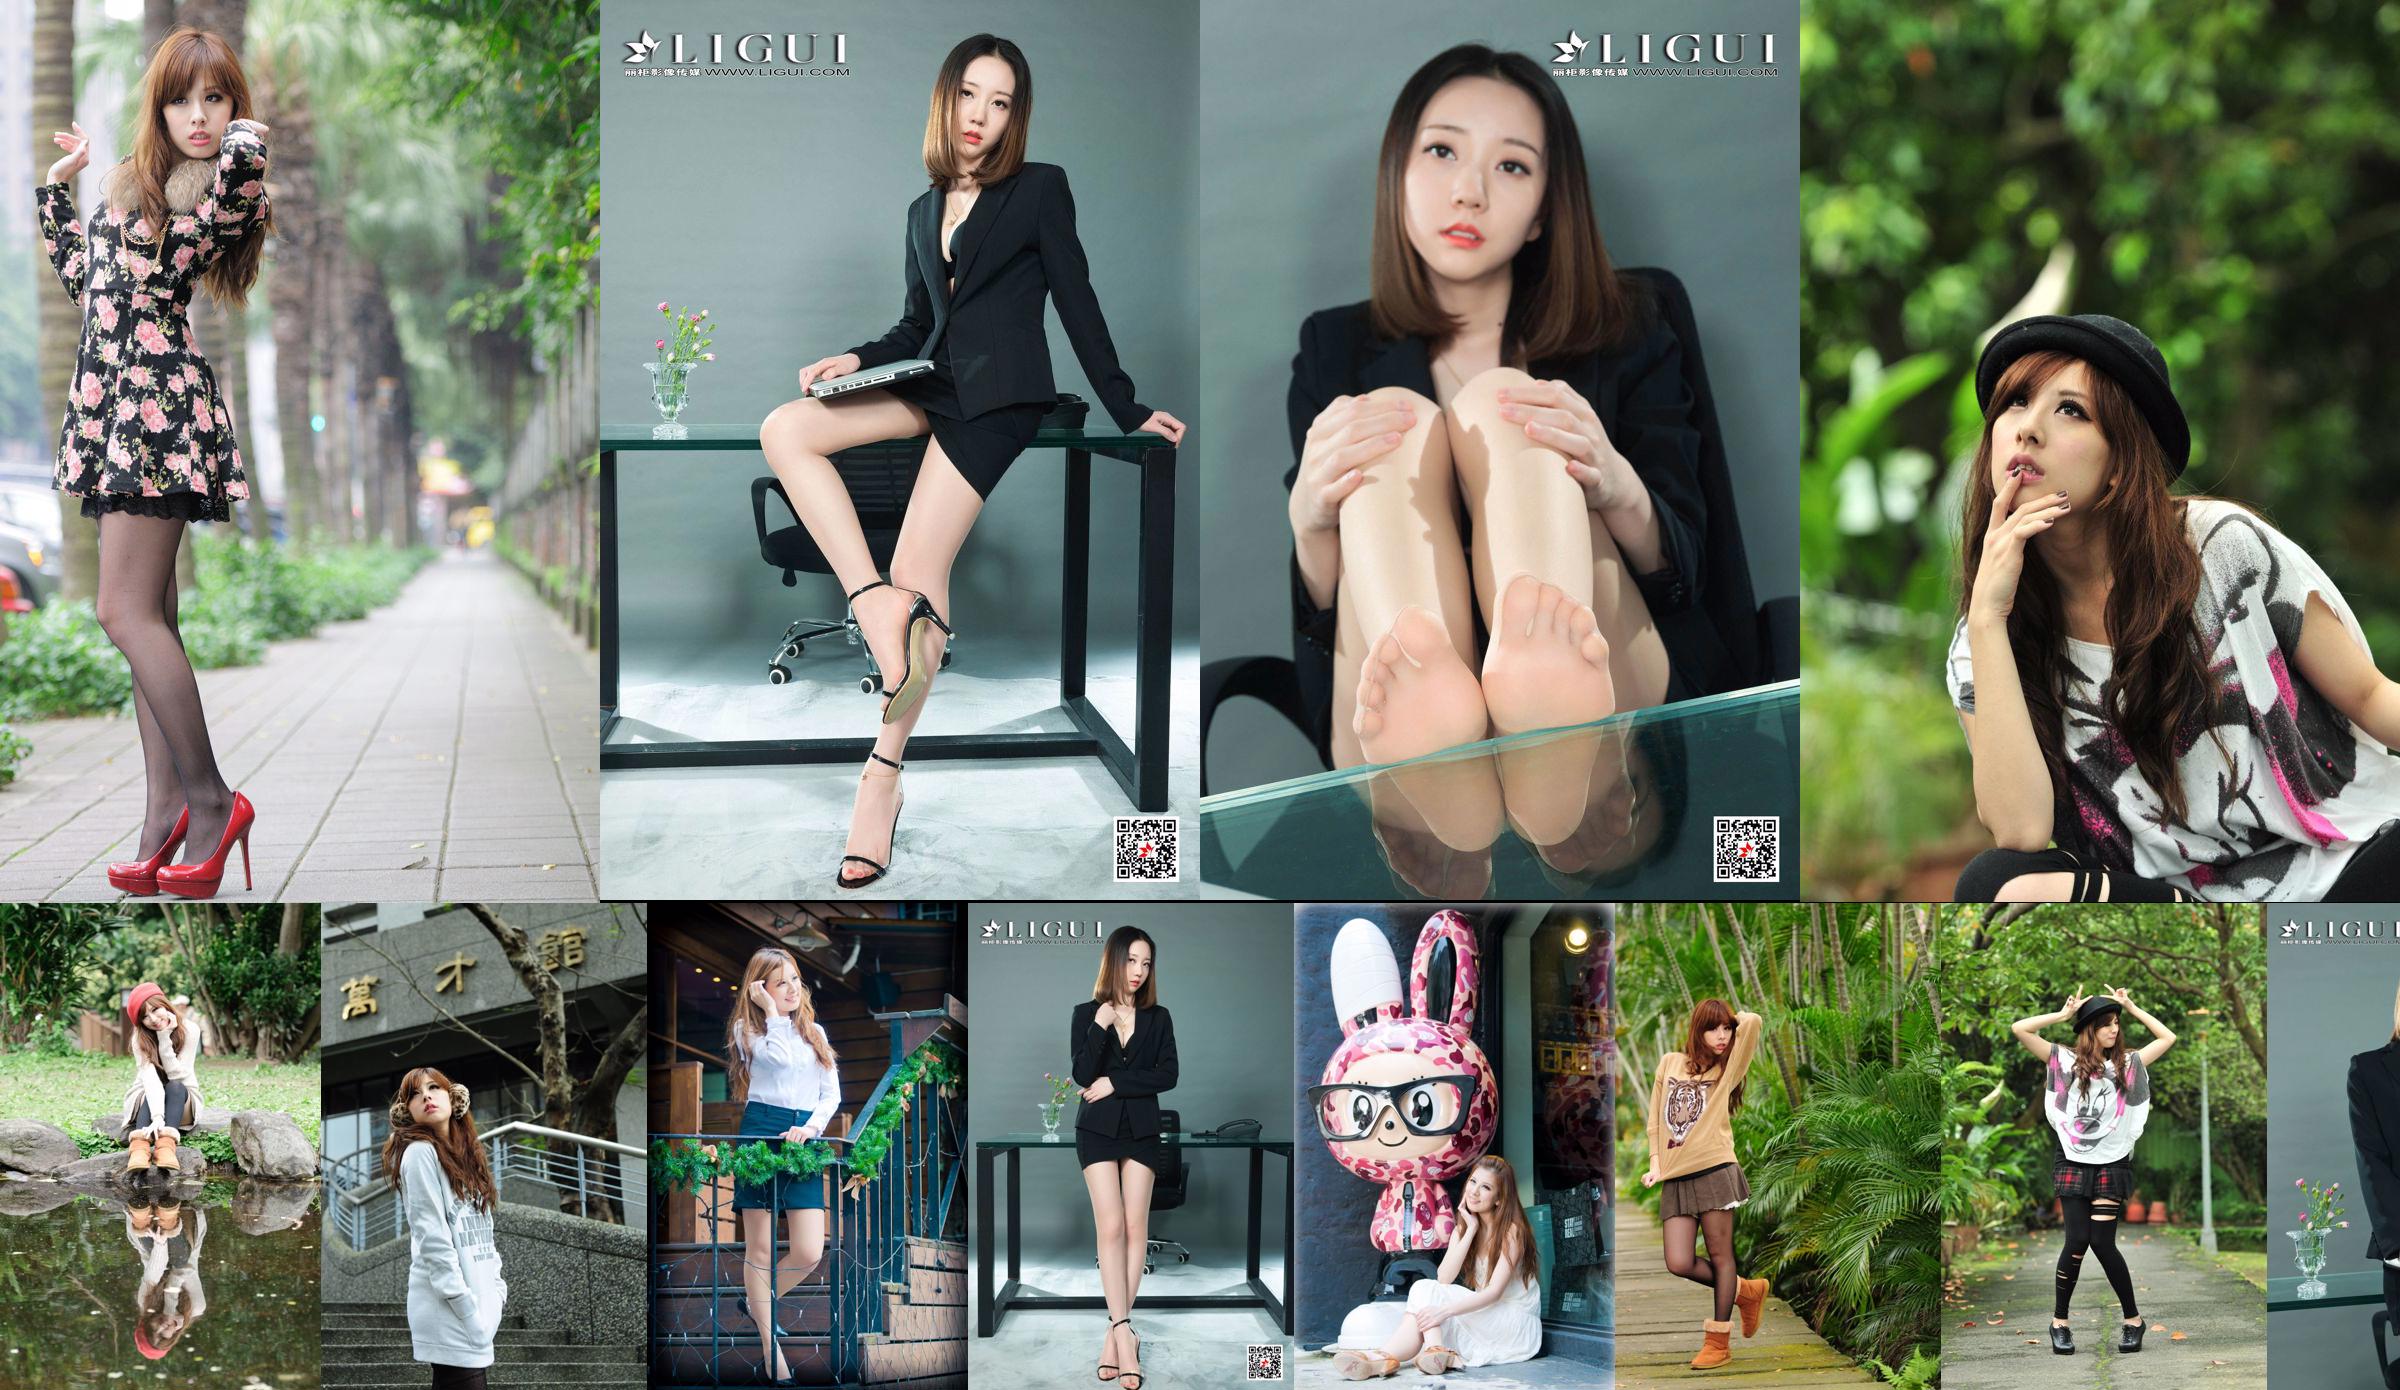 La hermana taiwanesa Xiaomi Kate su colección de fotos "Pequeñas imágenes frescas al aire libre" No.b65e51 Página 14